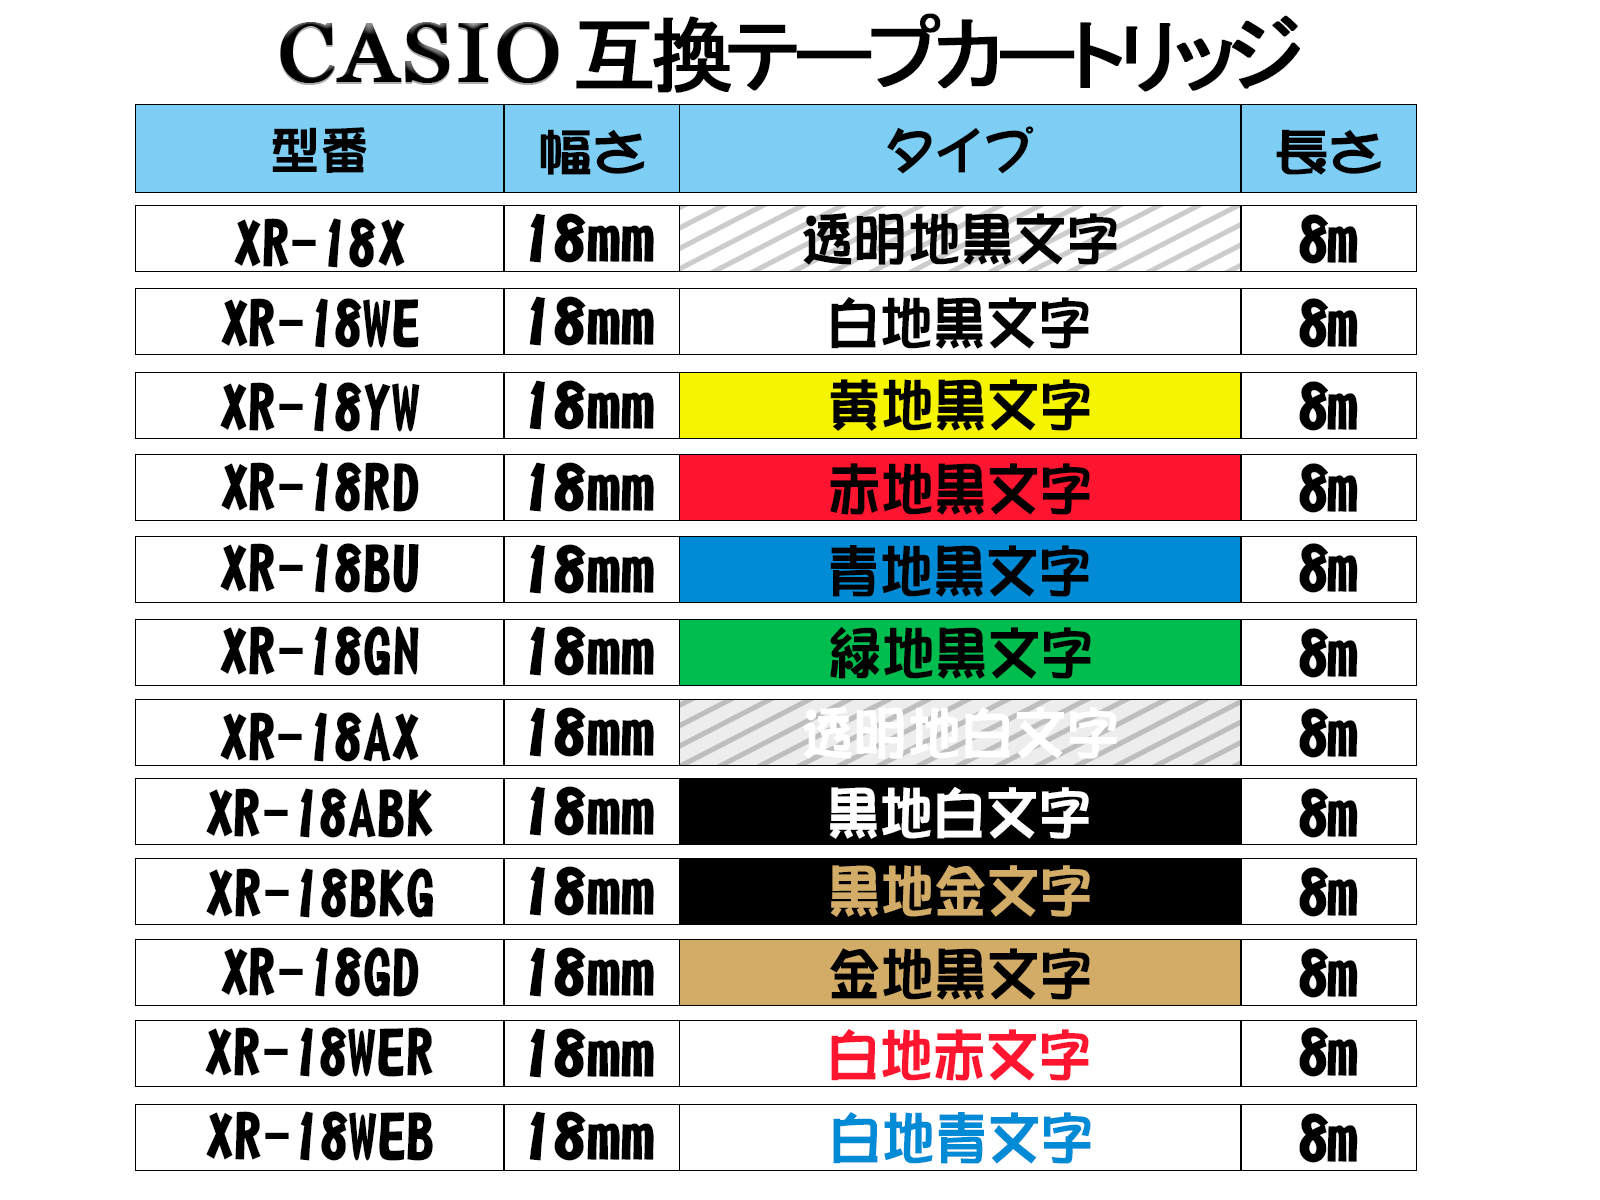 【楽天市場】Casio casio カシオ ネームランド 互換 テープカートリッジ テプラテープ 互換 幅 18mm 長さ 8m 全 12色